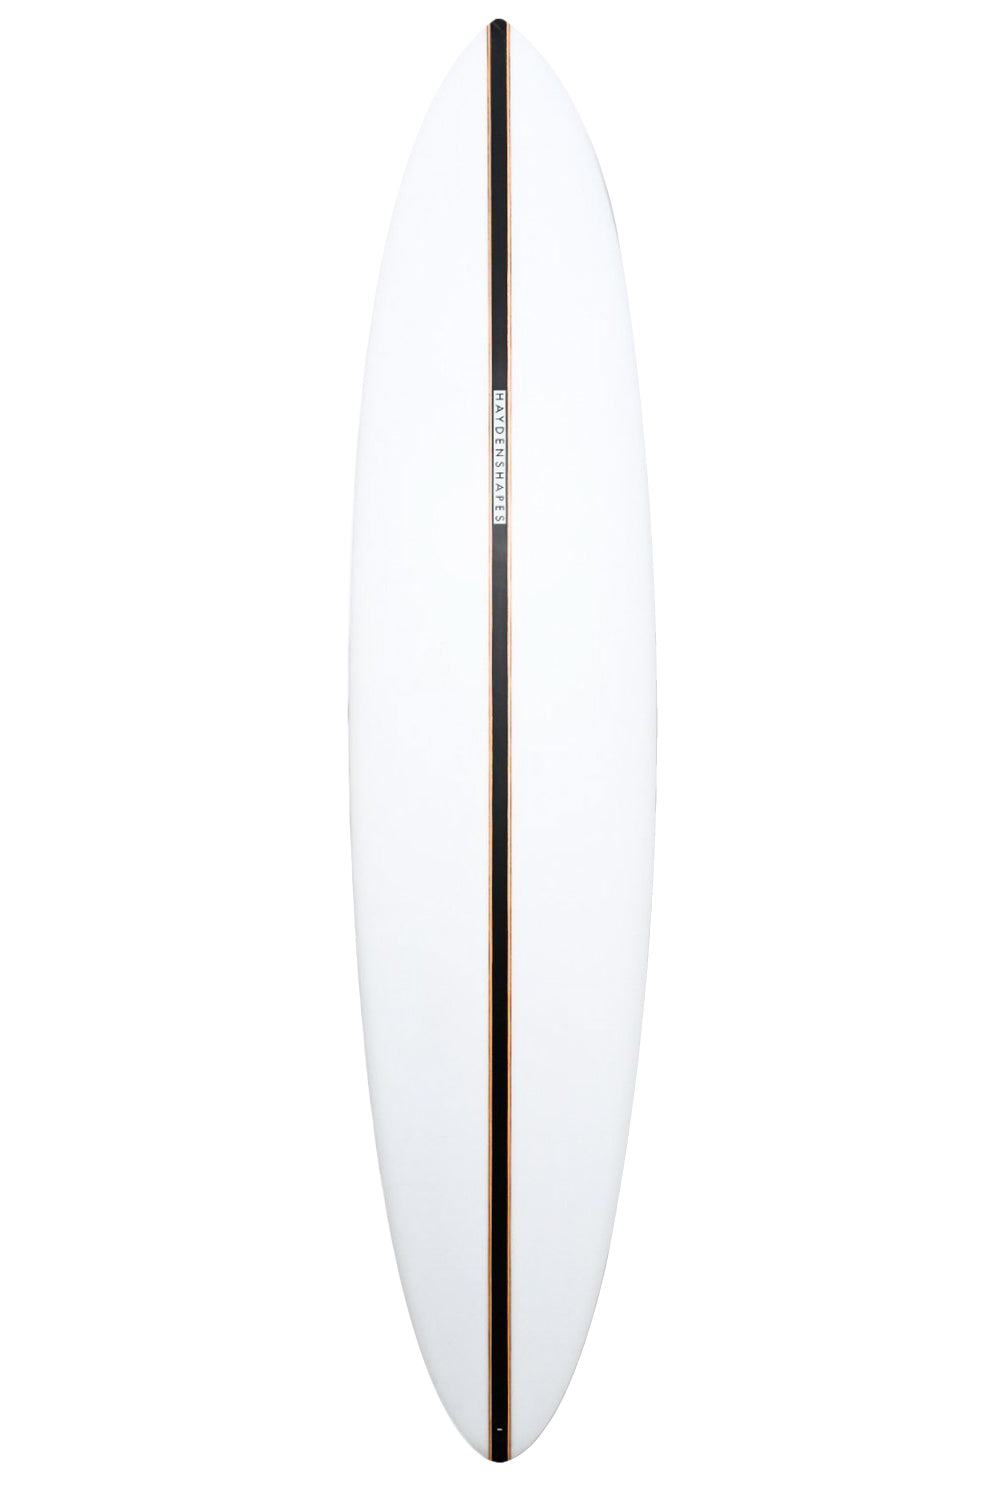 Hayden Shapes Mid Length Glider Surfboard